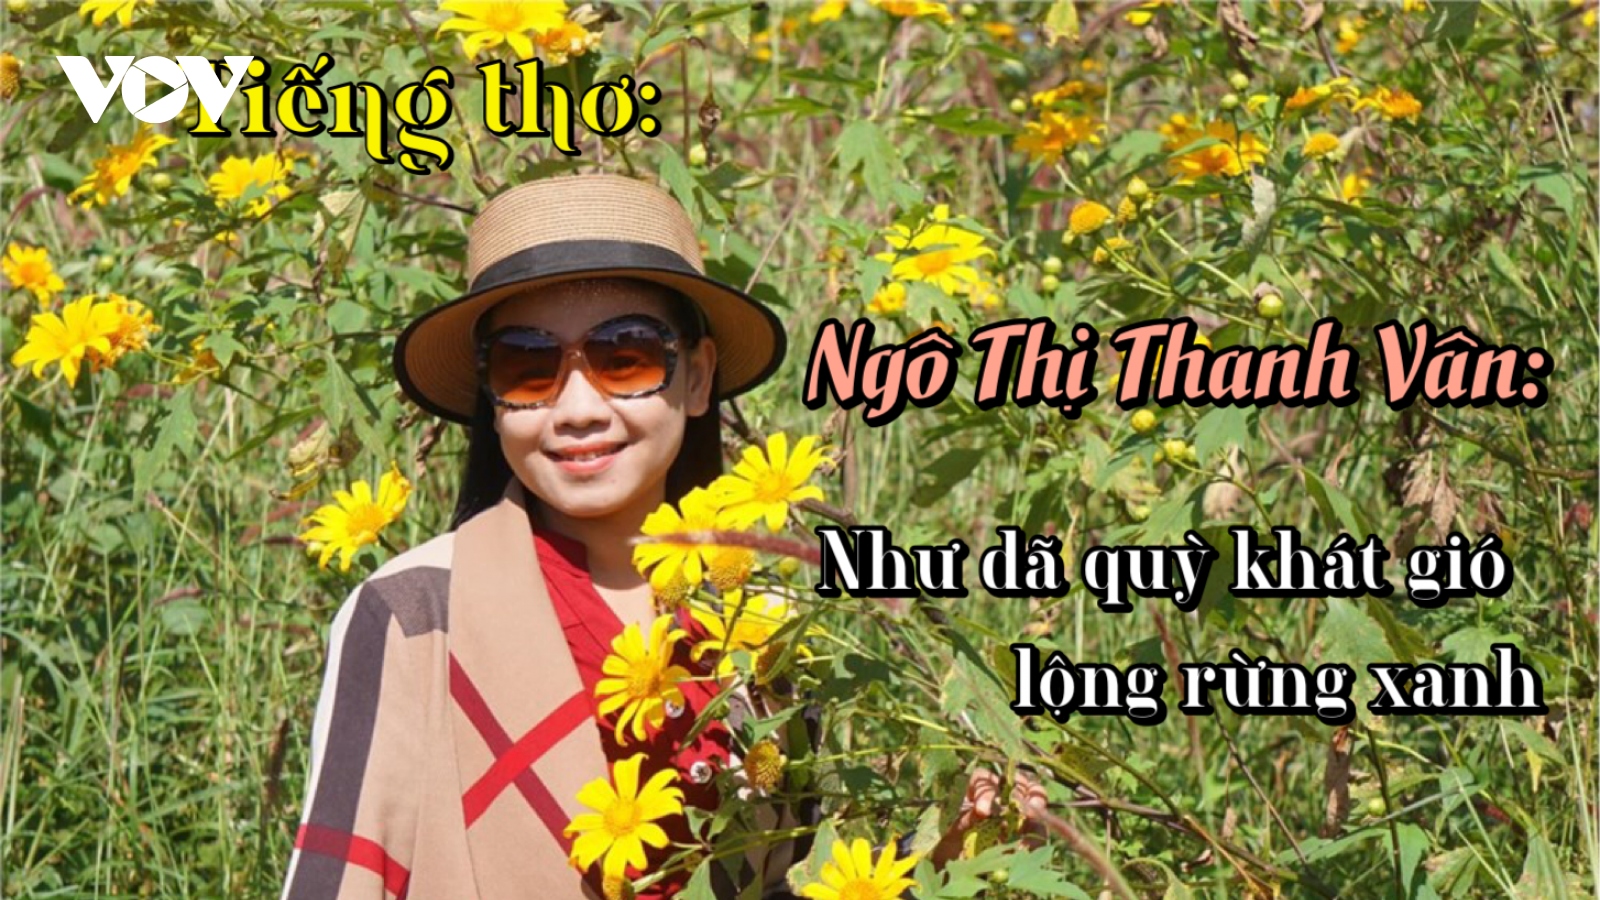 Nhà thơ Ngô Thị Thanh Vân: "Như dã quỳ khát gió lộng rừng xanh"